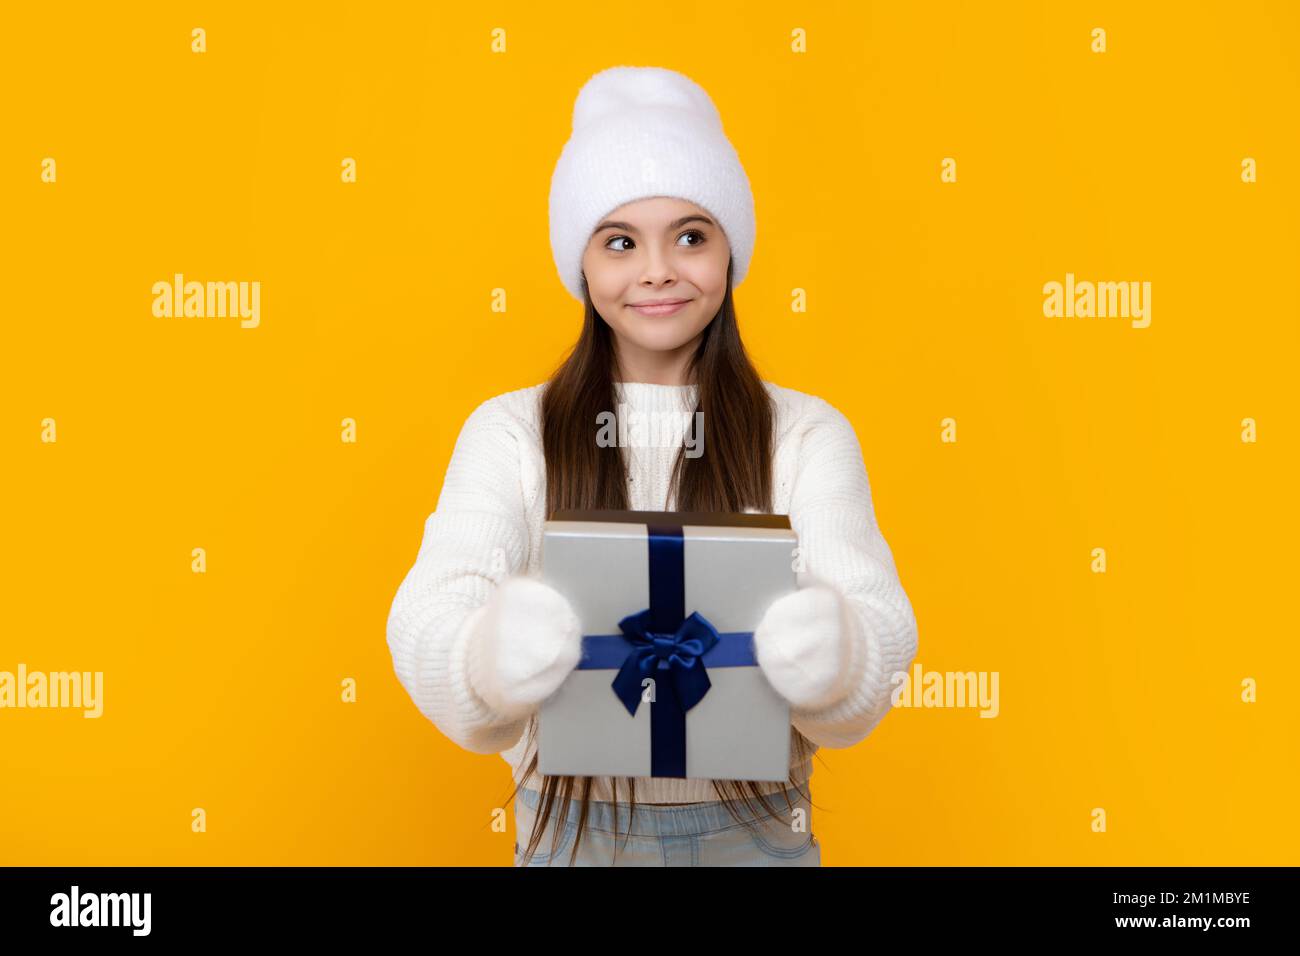 Porträt eines Teenagers Kind Mädchen 12, 13, 14 Jahre alt mit Weihnachts-Geschenkbox. Teen geben Geburtstagsgeschenk. Stockfoto